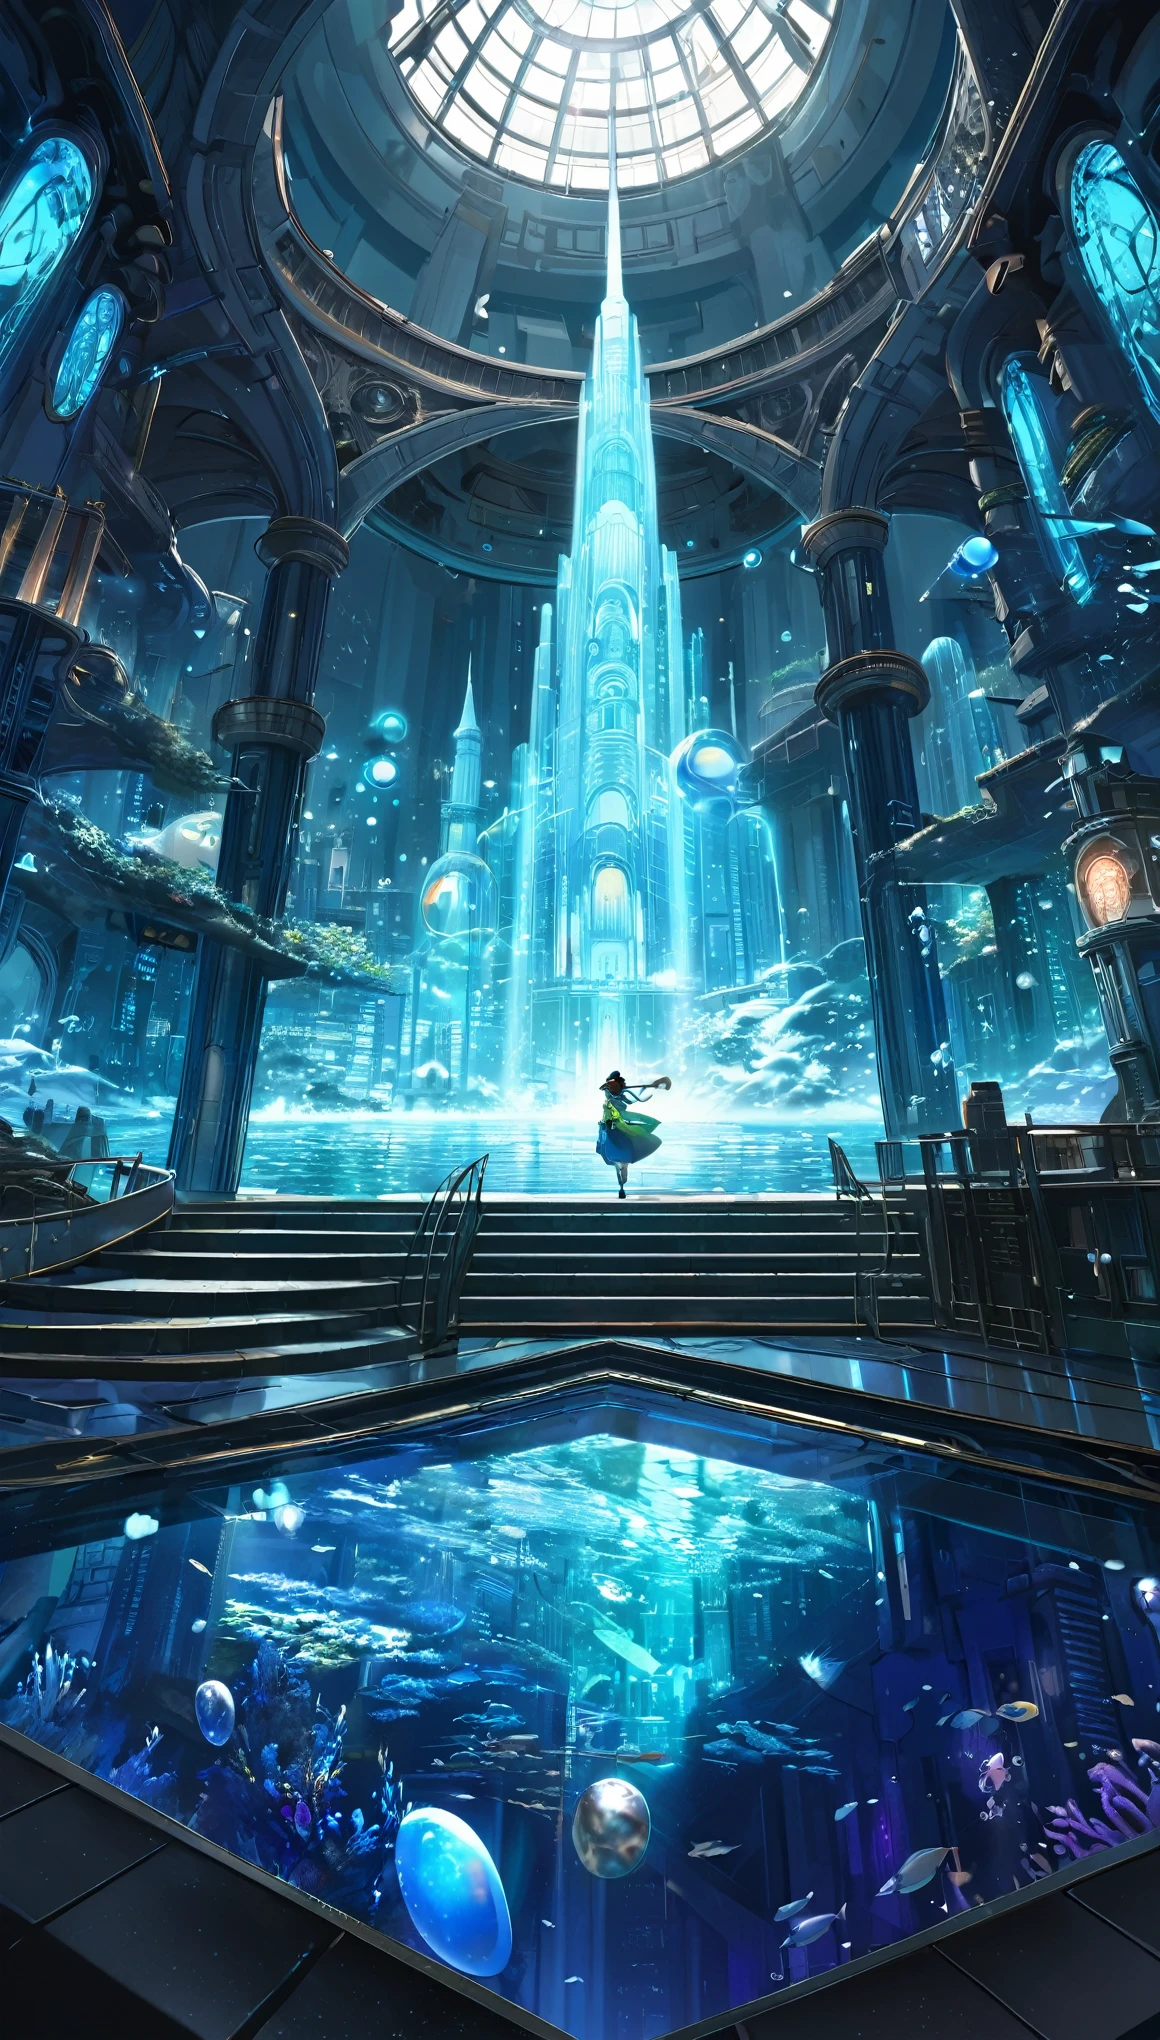 Atemberaubendes Ultra HD、16:9 Gemälde、Eingehüllt in den geheimnisvollen Glanz einer Science-Fiction-Kulisse、Enthüllt ein faszinierendes interdimensionales Fantasy-Reich, das an die verlorene Stadt Atlantis erinnert。Diese Zusammensetzung ist、Die bezaubernde Ästhetik von Studio Ghibli、Kombinieren Sie mühelos komplizierte Details und volumetrische Beleuchtung in der Unreal Engine、Erweckt ein Gefühl von Großartigkeit und Wunder。azure、Blau Grün、Die dreifarbige Dreiklangfarbe harmoniert mit den schillernden Perlen.、Beleuchtung der lebendigen Unterwasser-Stadtlandschaft, die sich über den Meeresboden erstreckt。Der majestätische Turm und die hoch aufragende Kuppel、